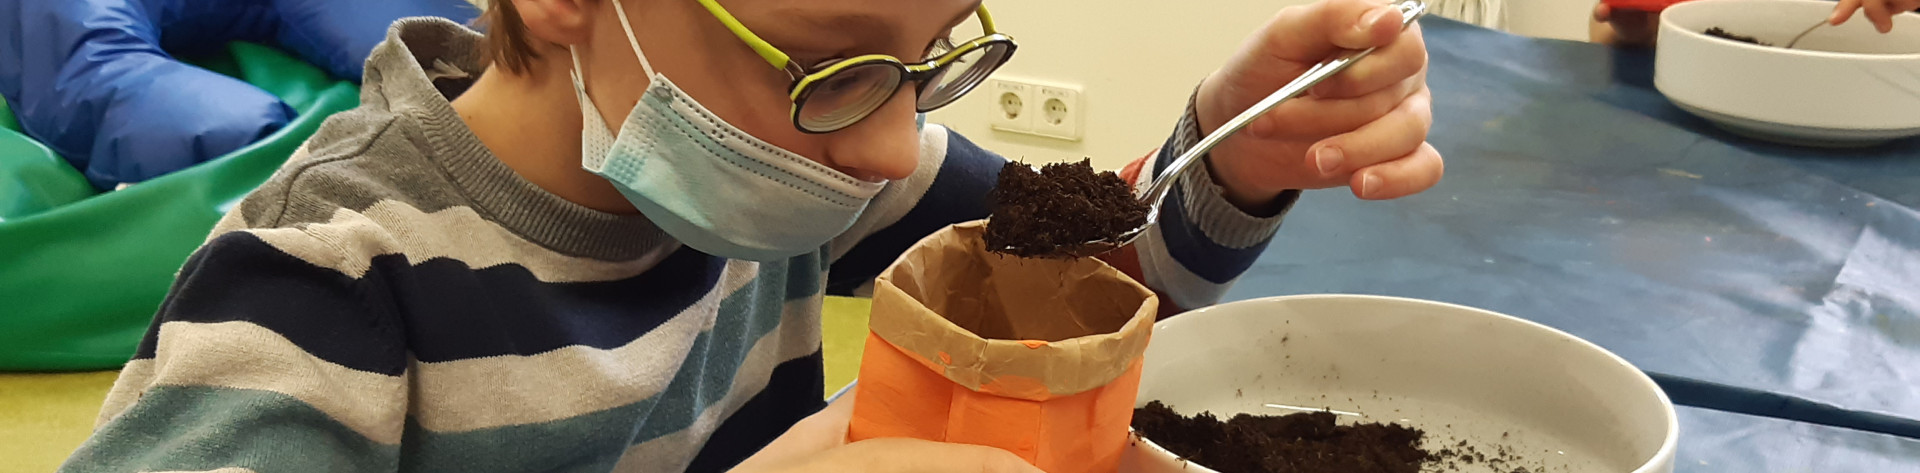 Schüler macht Experiment mit Filter und Erde